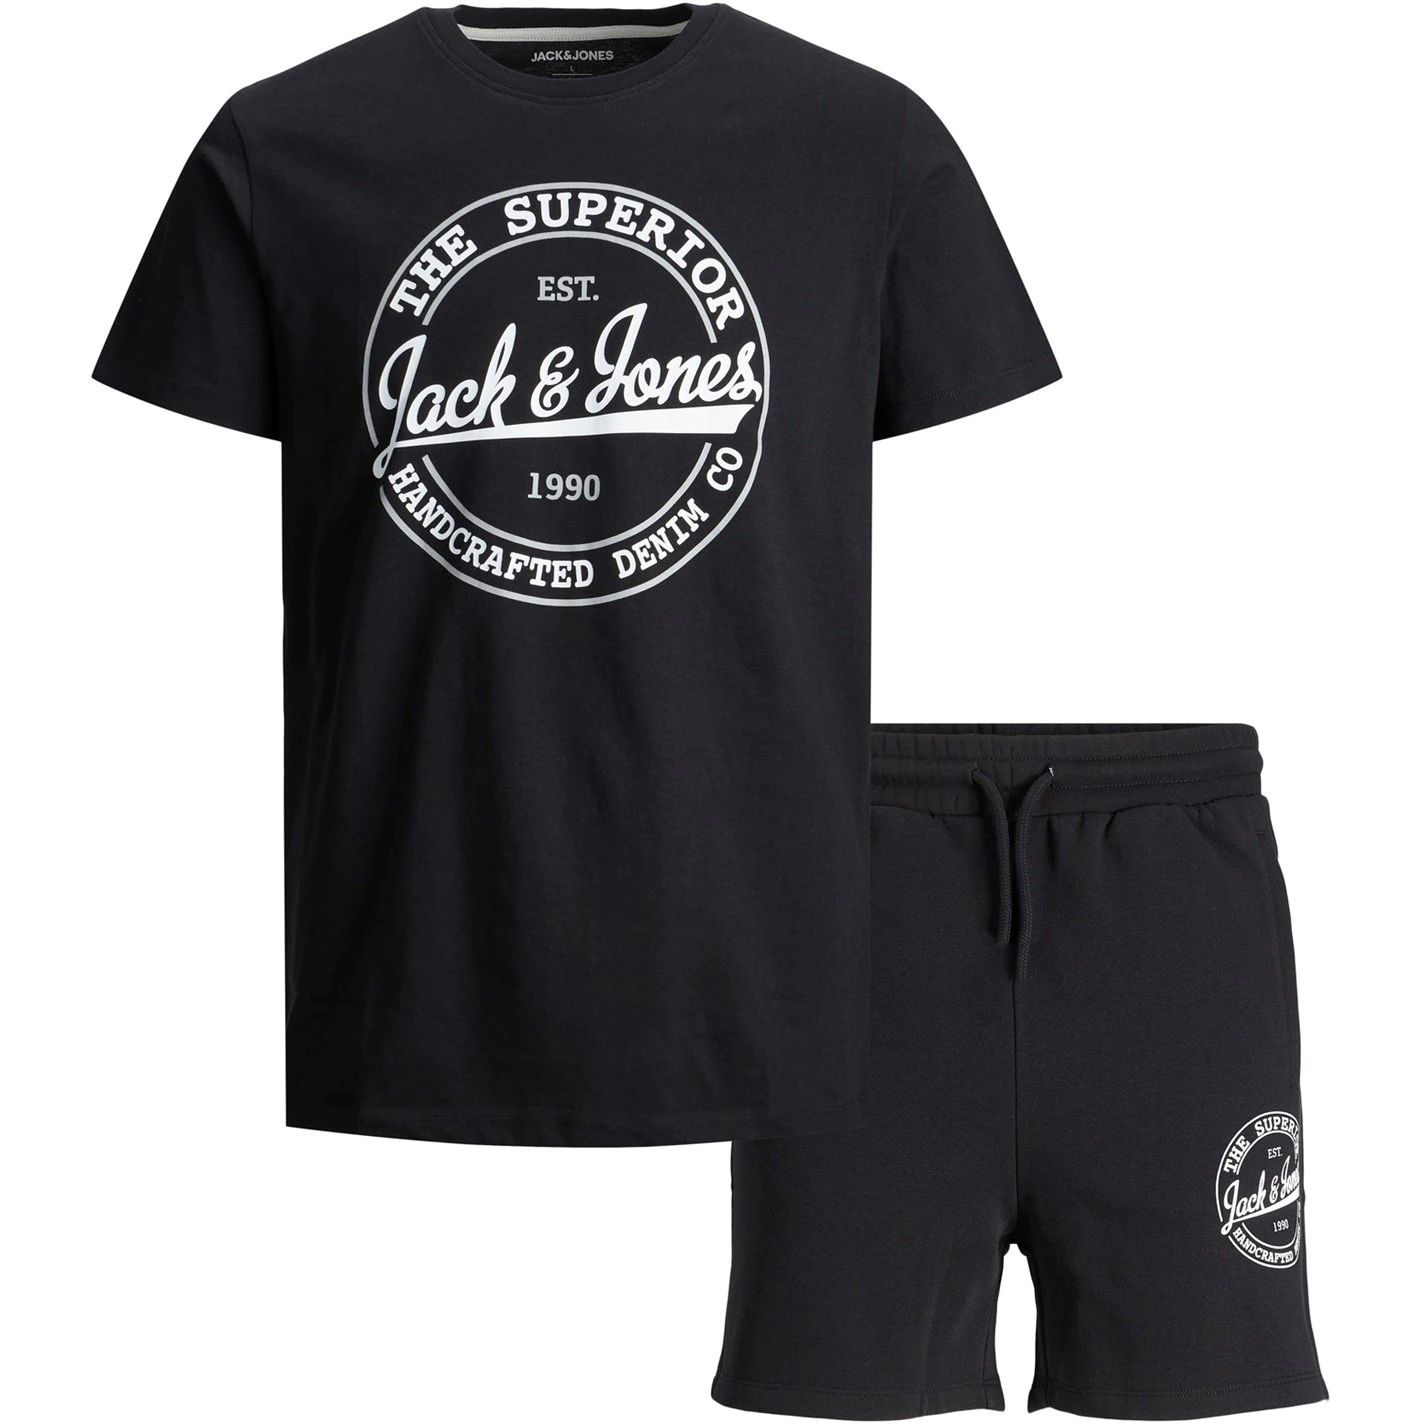 dětský set tričko + šortky JACK & JONES - BLACK